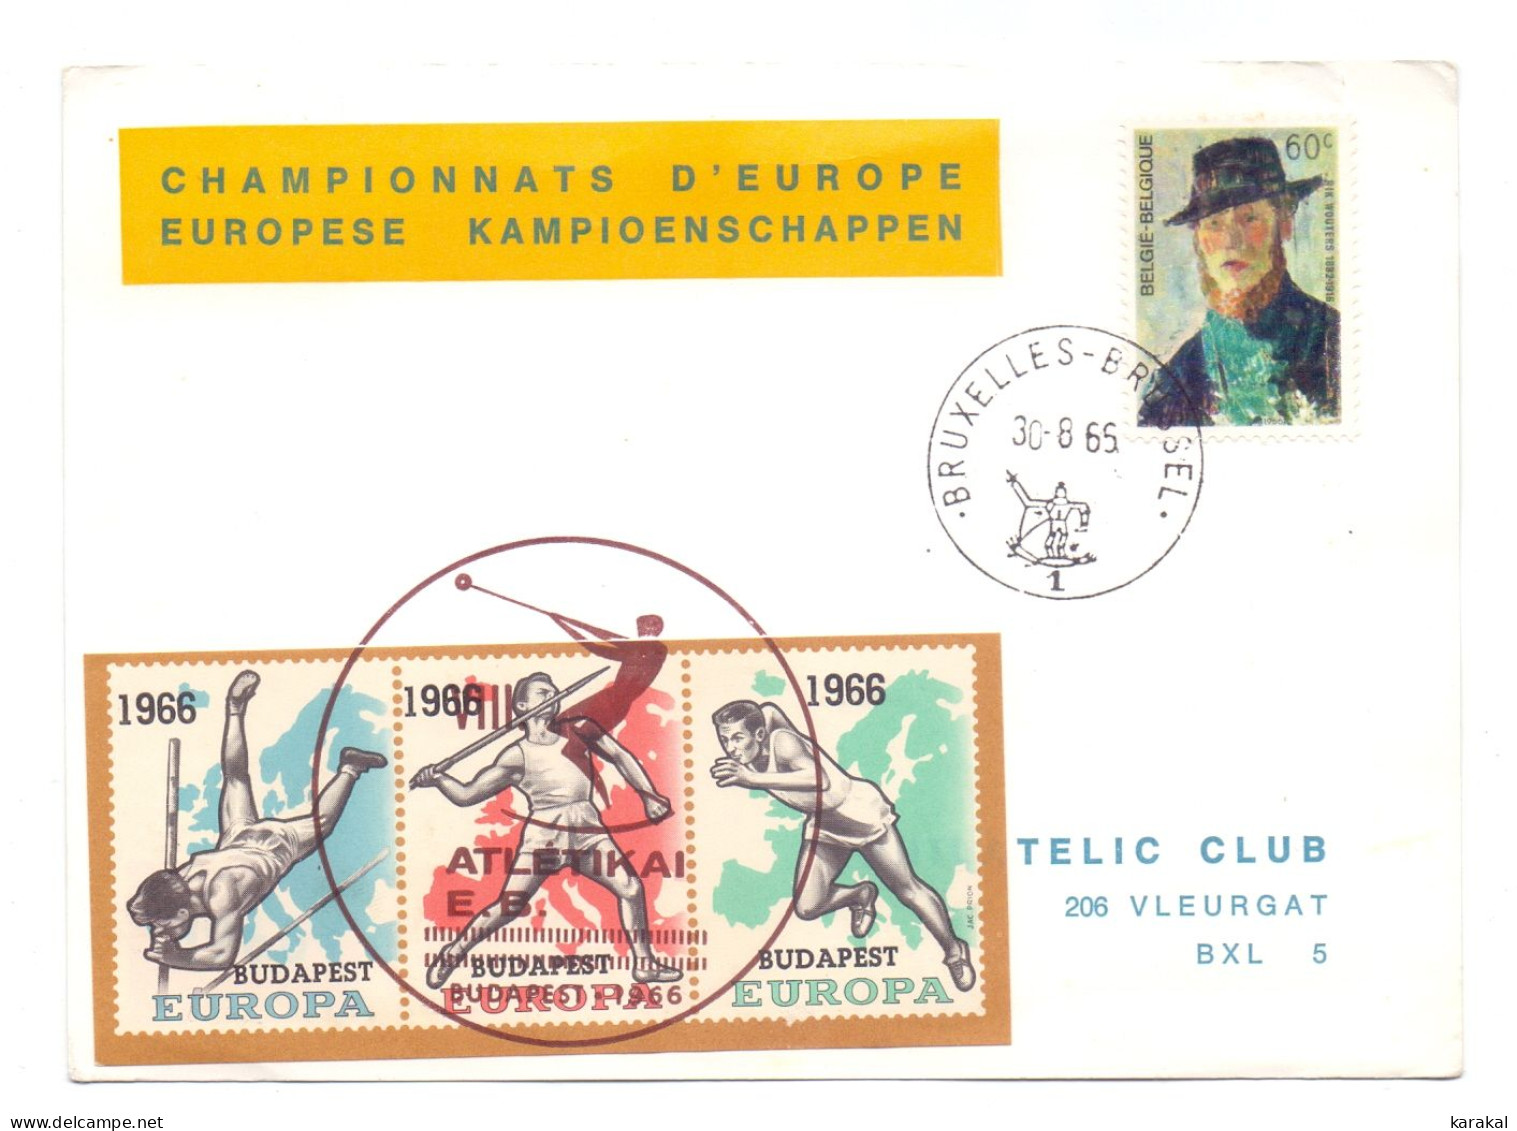 Belgique Errinophilie E98 Europa Championnats D'Europe Europese Kampioenschap Budapest 1966 - 1966